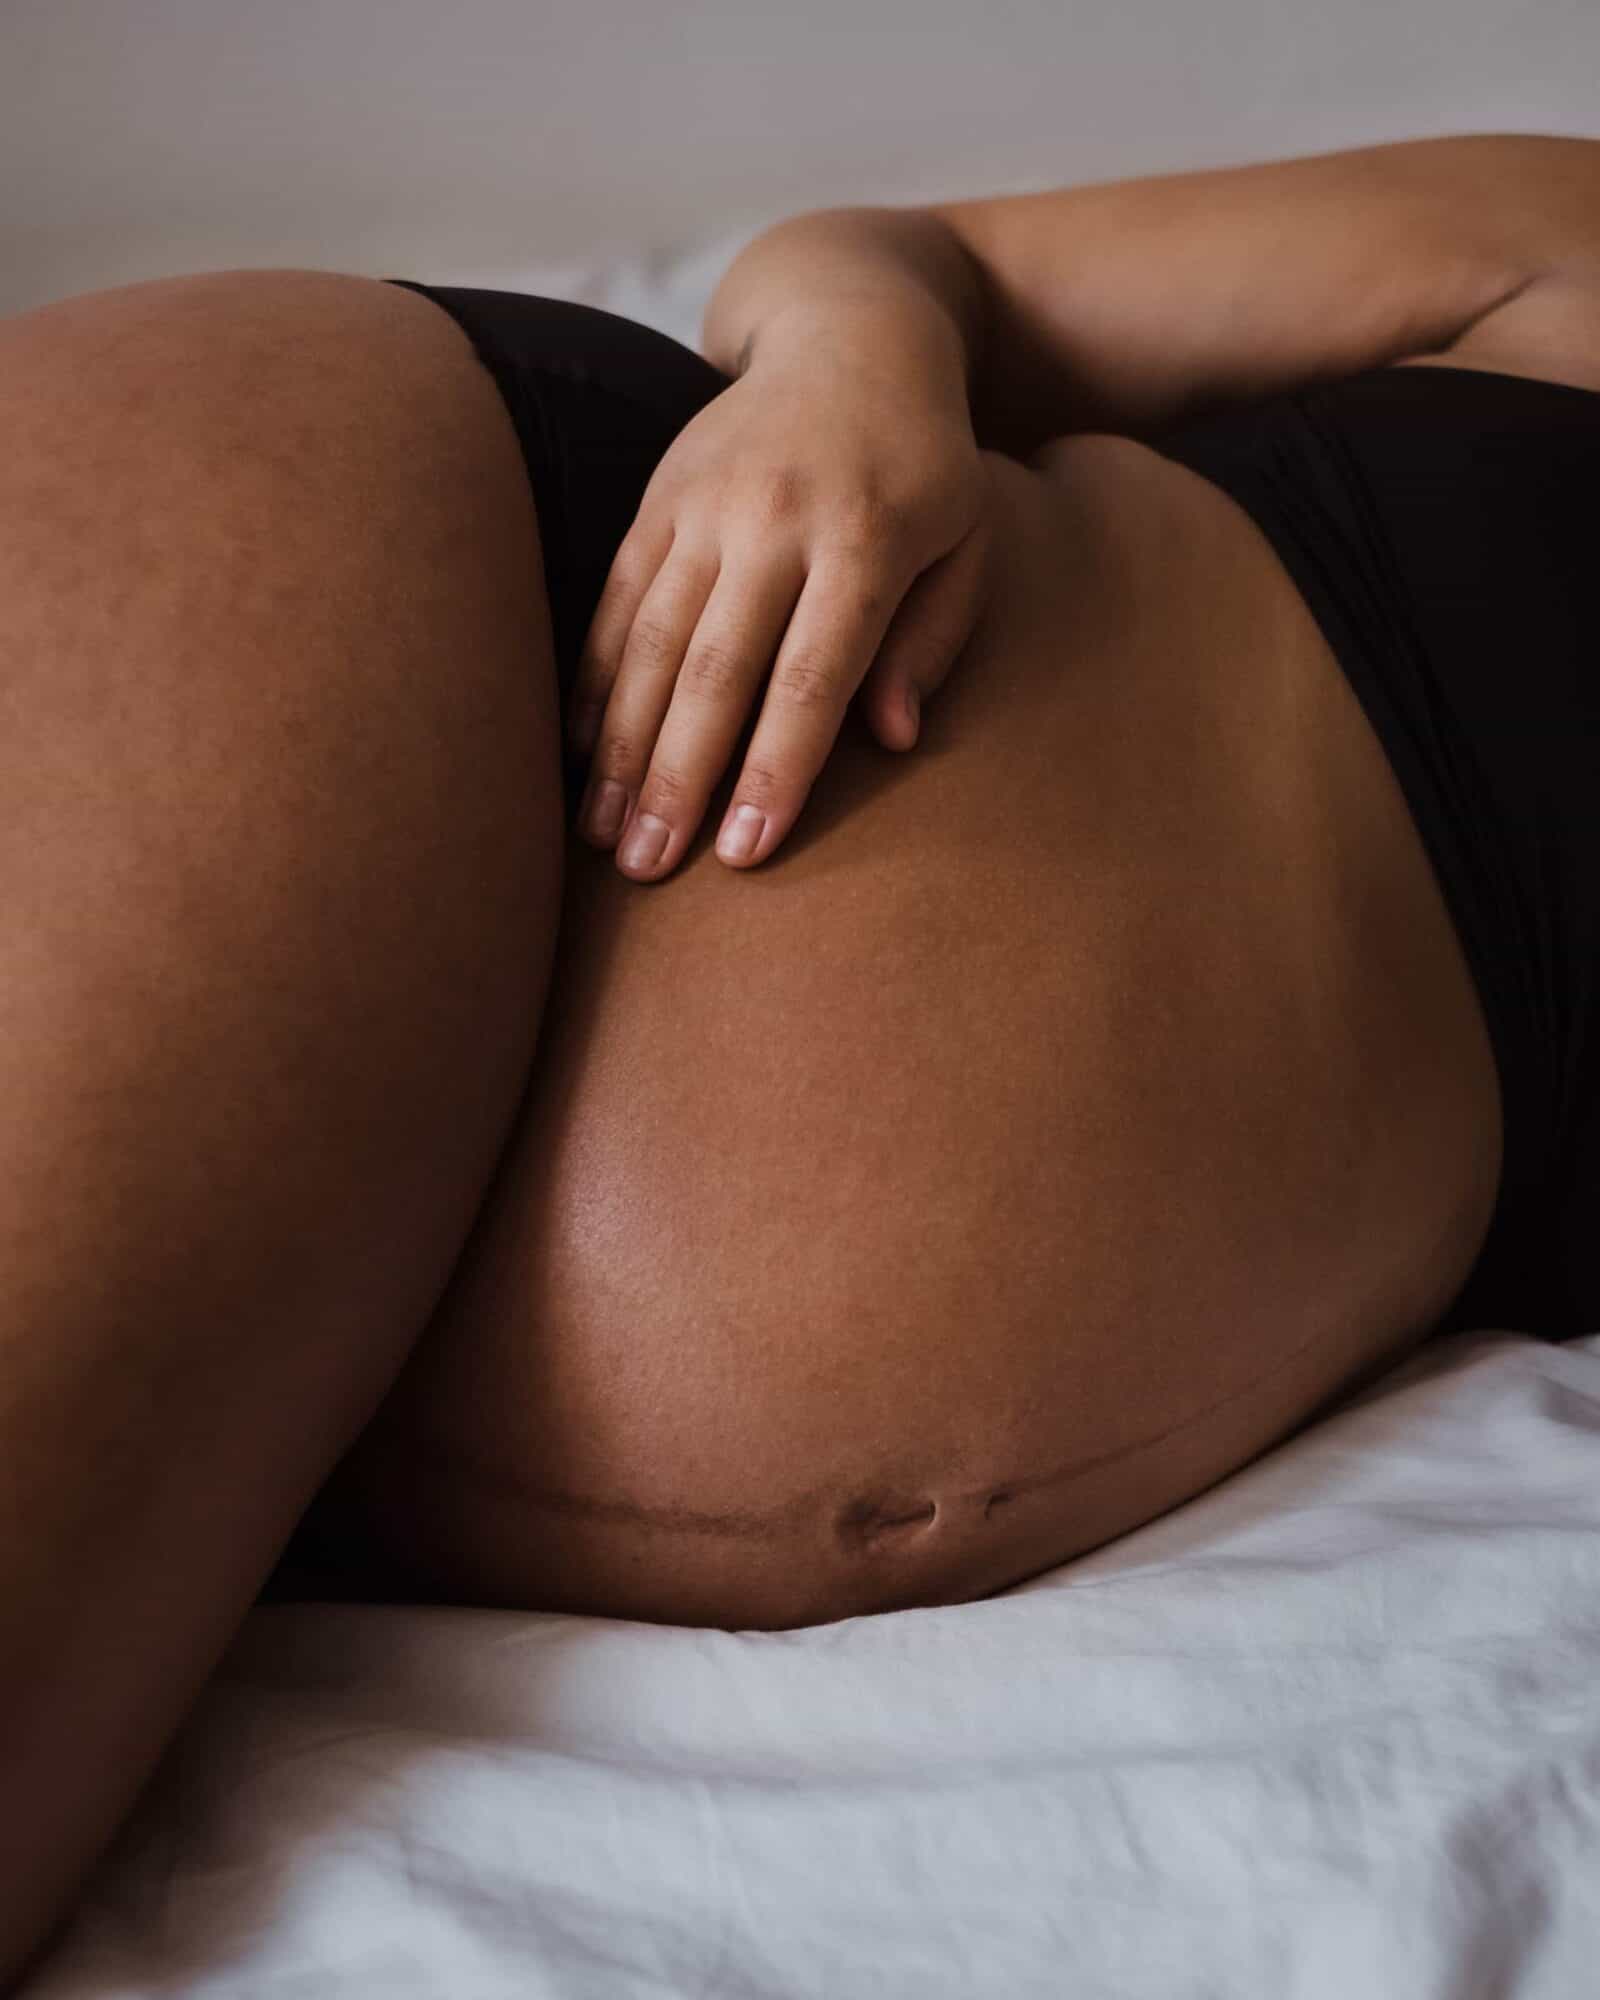 comment éviter les vergetures pendant la grossesse : femme enceinte allongée sur un lit